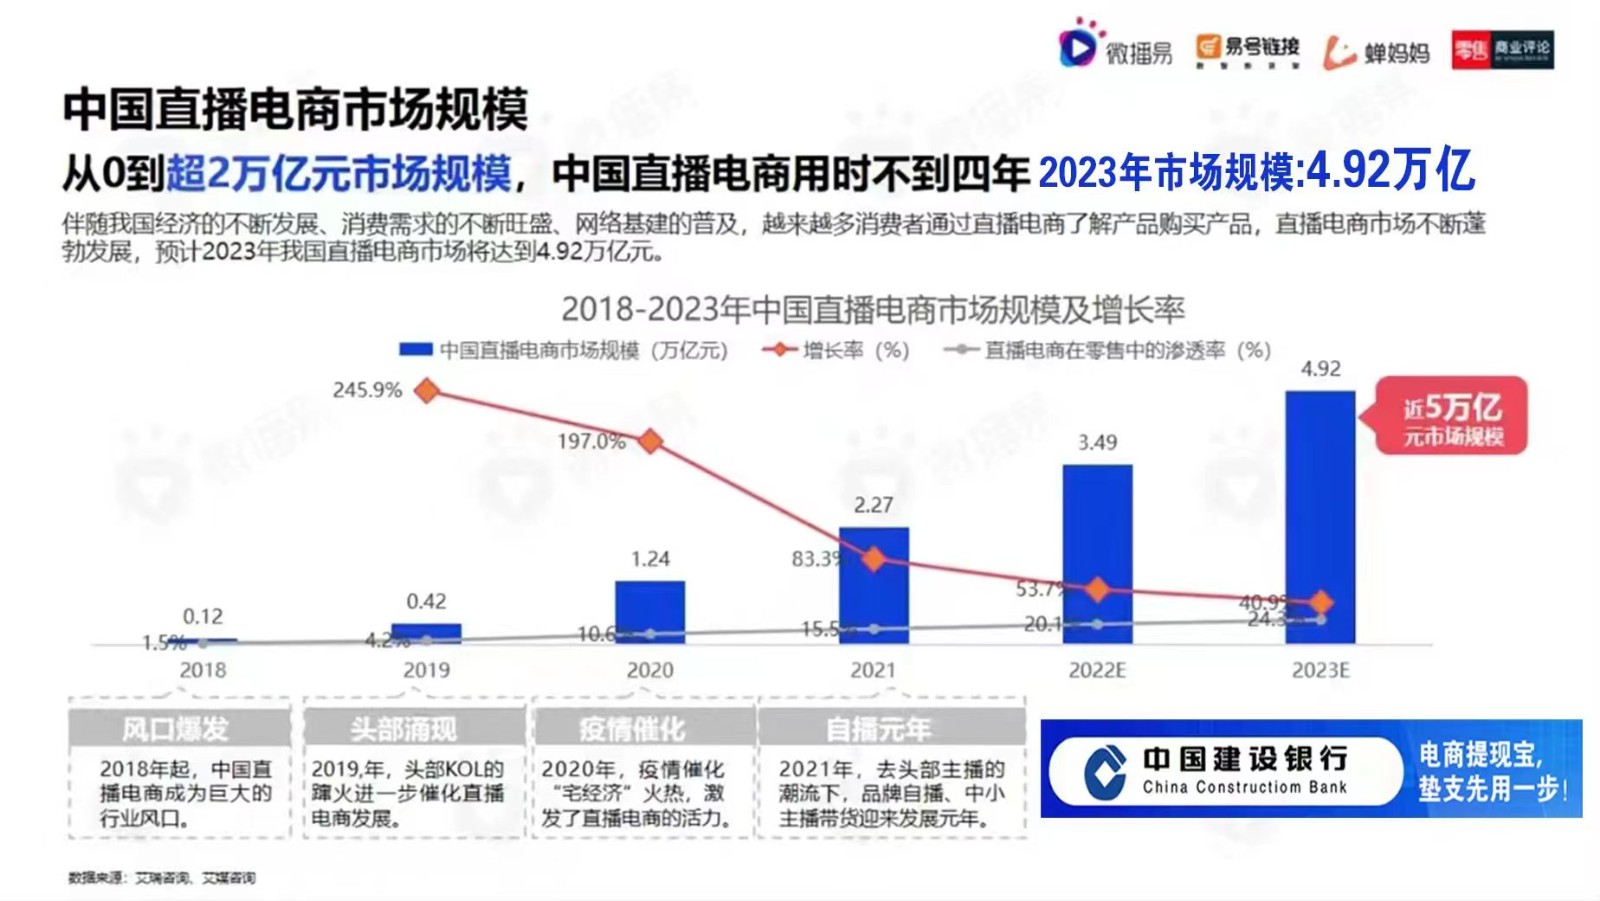 【供应链金融】中国直播电商市场规模2023年度的预测结果:4.92万亿